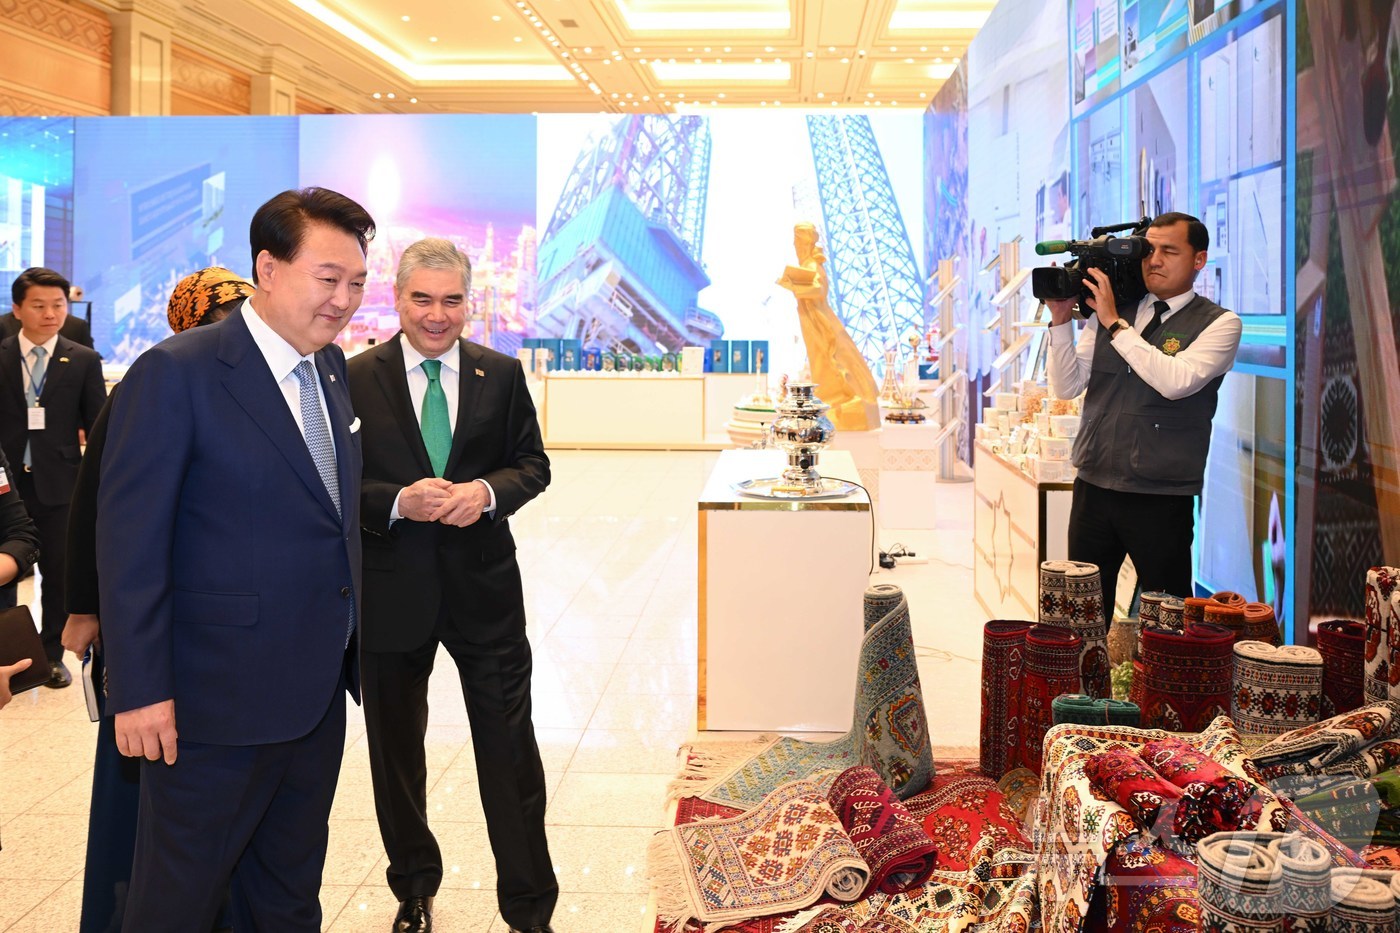 (서울=뉴스1) 송원영 기자 = 윤석열 대통령이 11일(현지시간) 투르크메니스탄 아시카바트의 상공회의소에서 열린 '한-투르크메니스탄 비즈니스 포럼'에서 투르크메니스탄 국가최고지도자 …